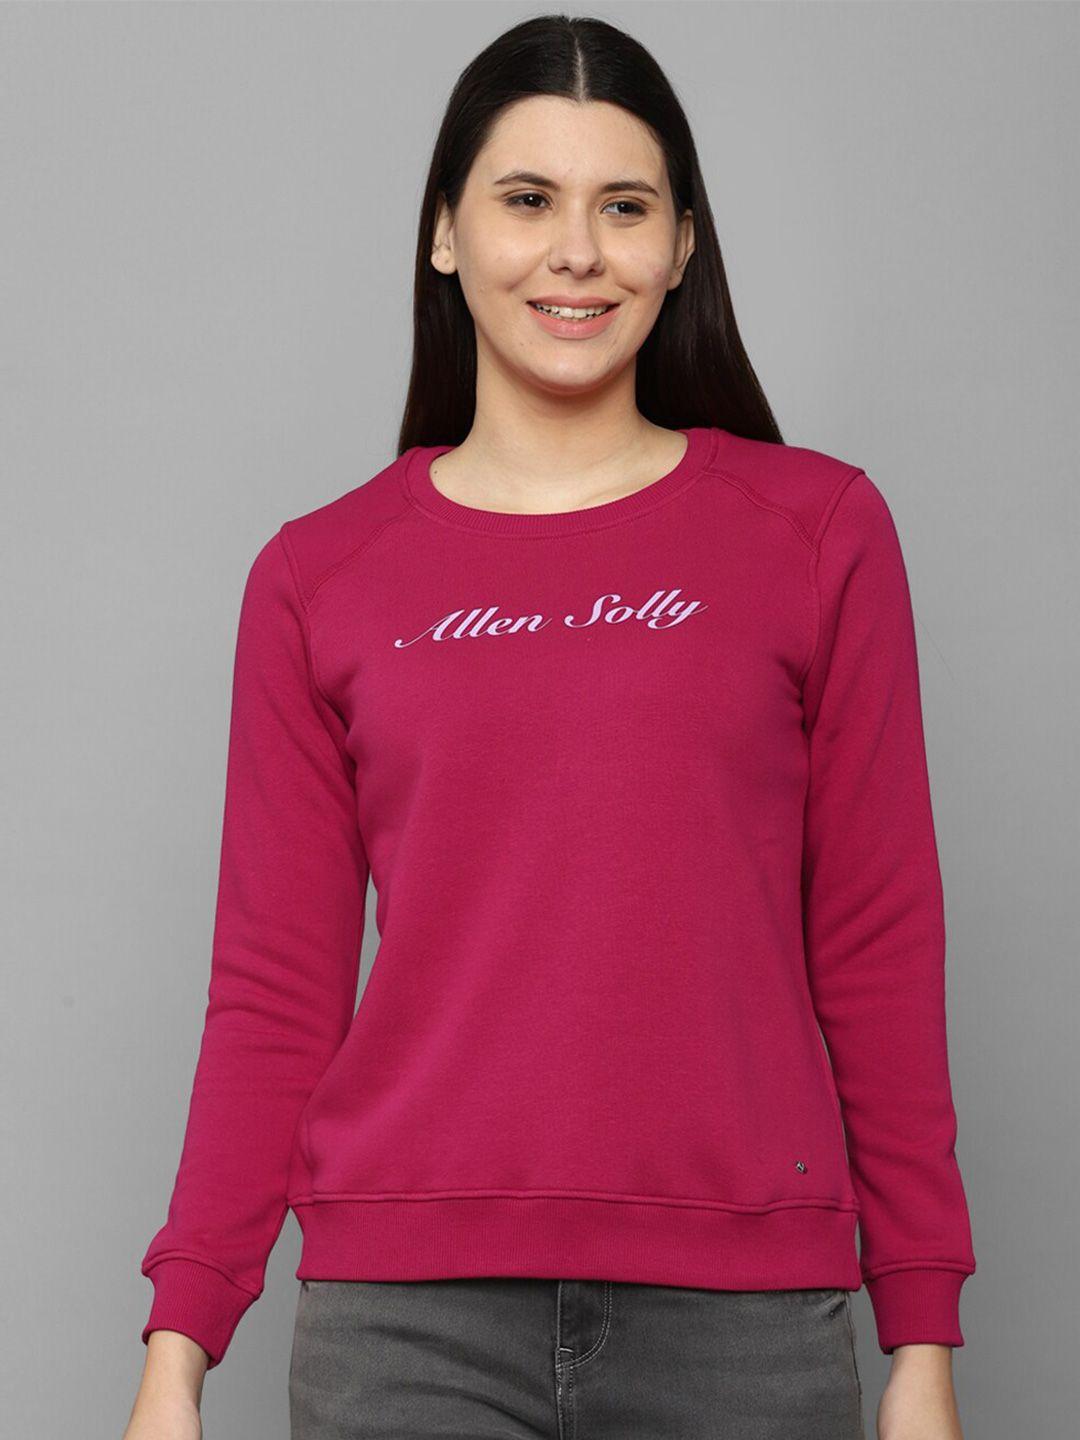 allen solly woman women pink solid sweatshirt